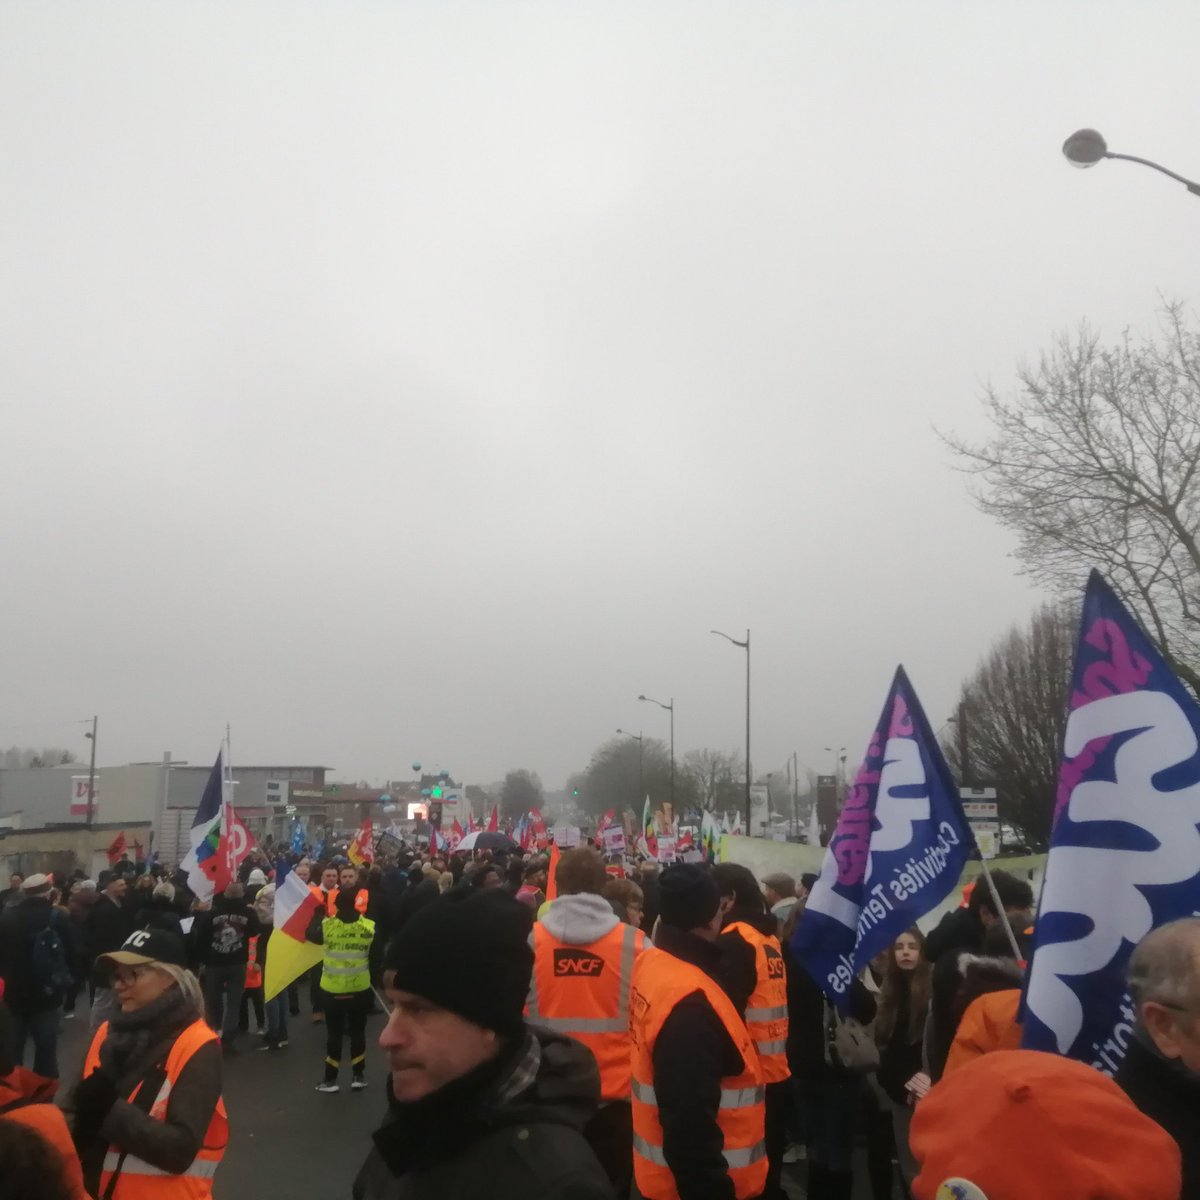 En direct de Saint Quentin cet après-midi pour la début de la manifestation contre la réforme des retraites. #NonALaReformeDesRetraites #Mobilisezvous #Indignezvous.